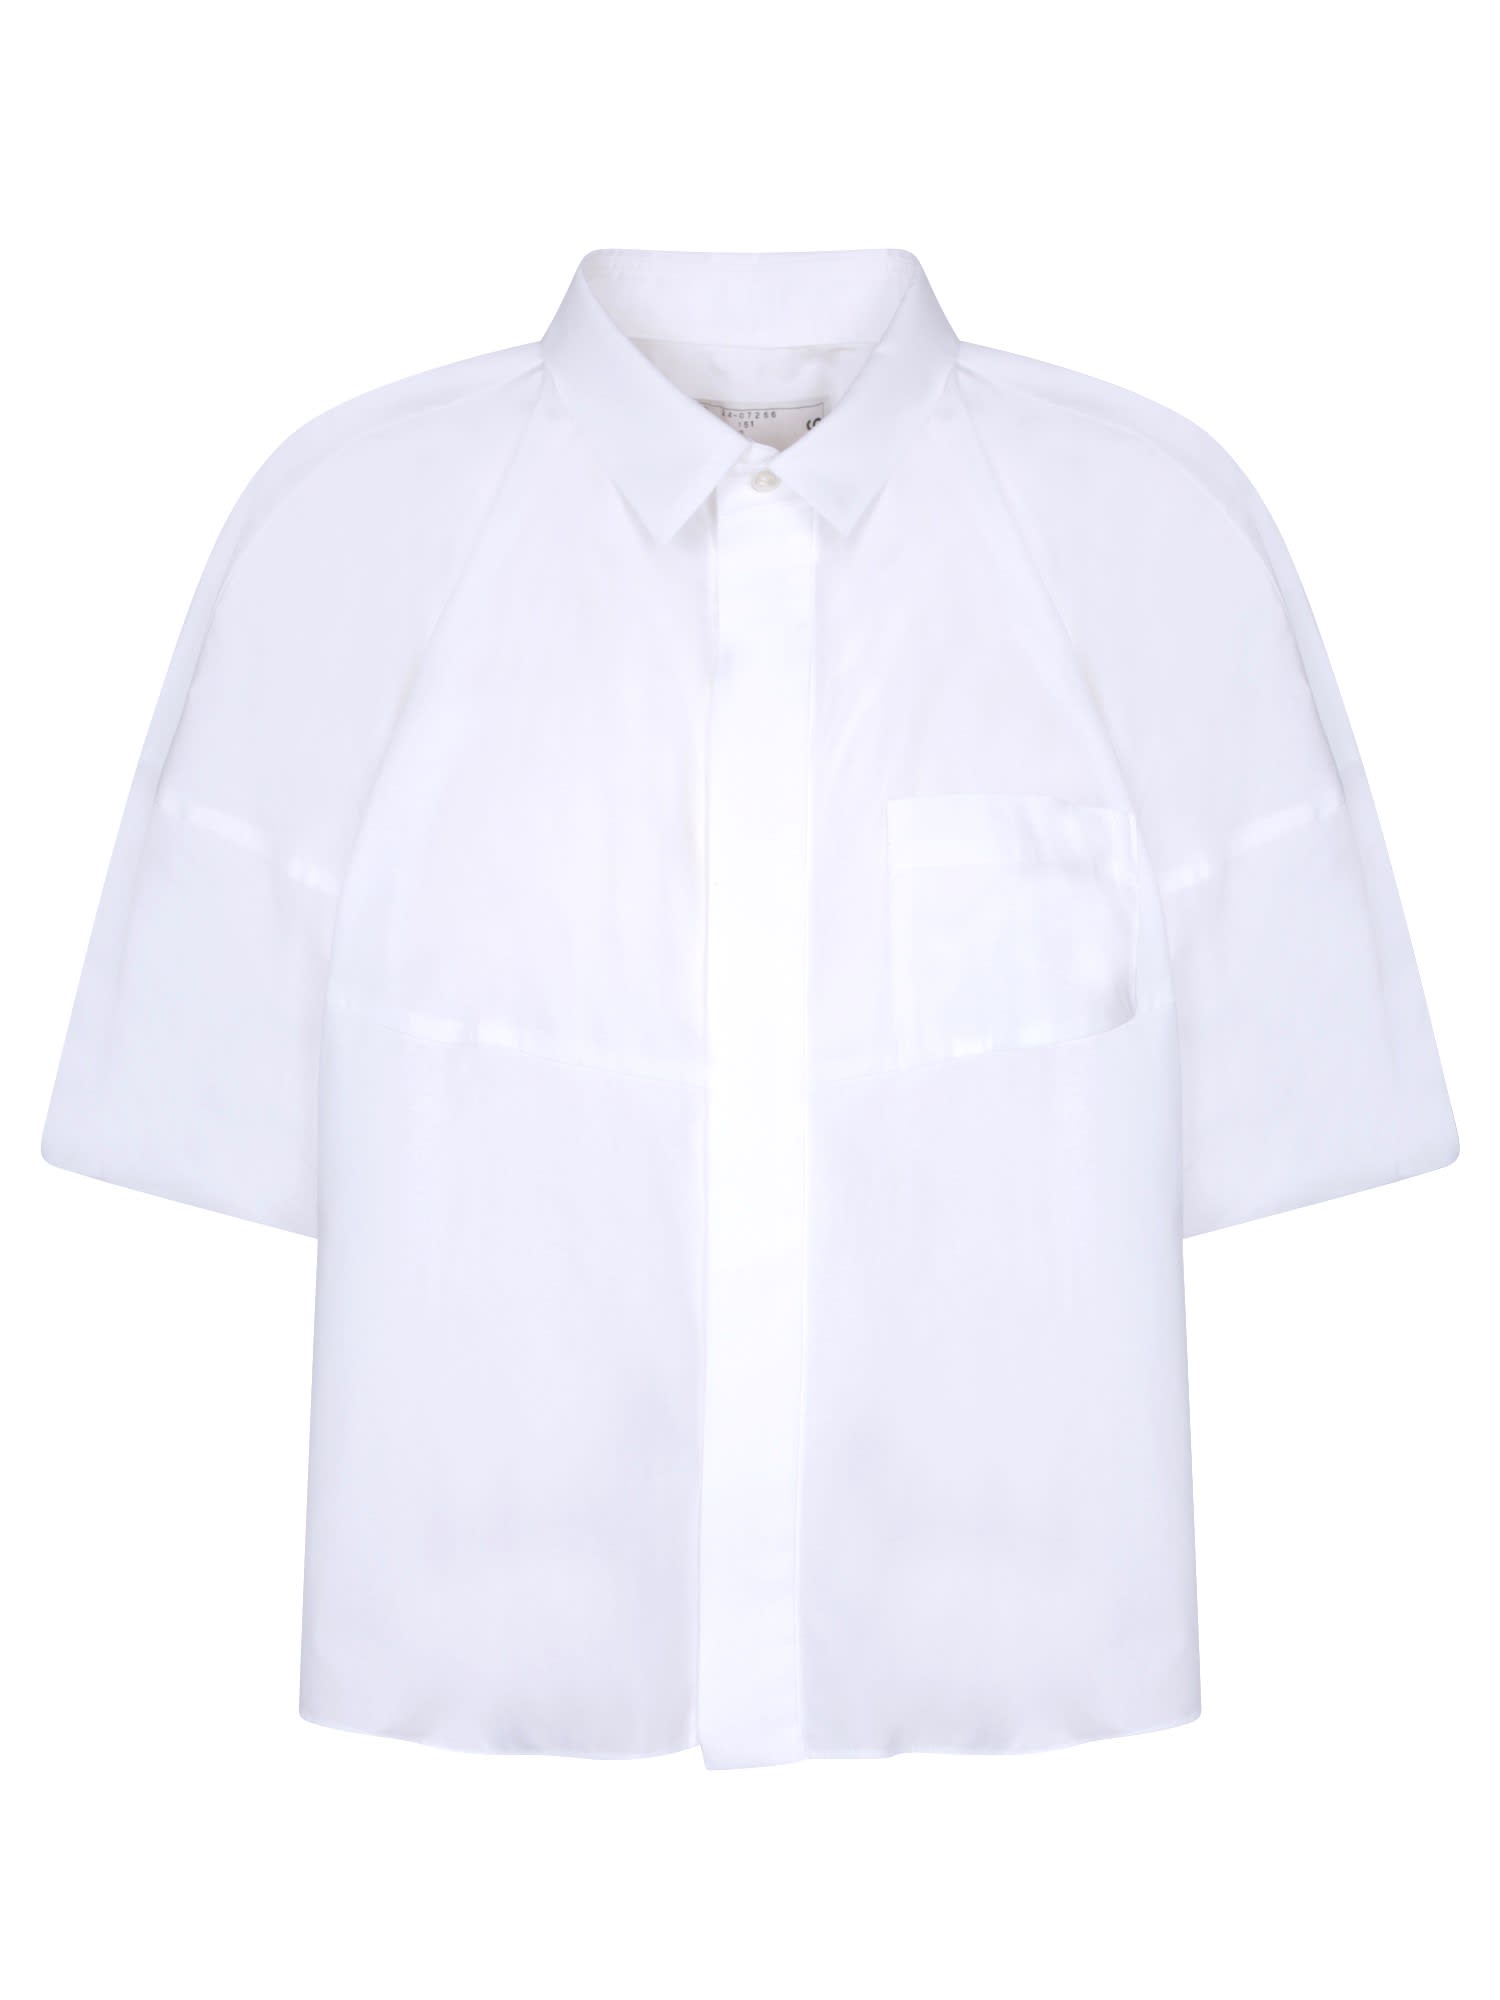 Sacai White Cotton Poplin Shirt